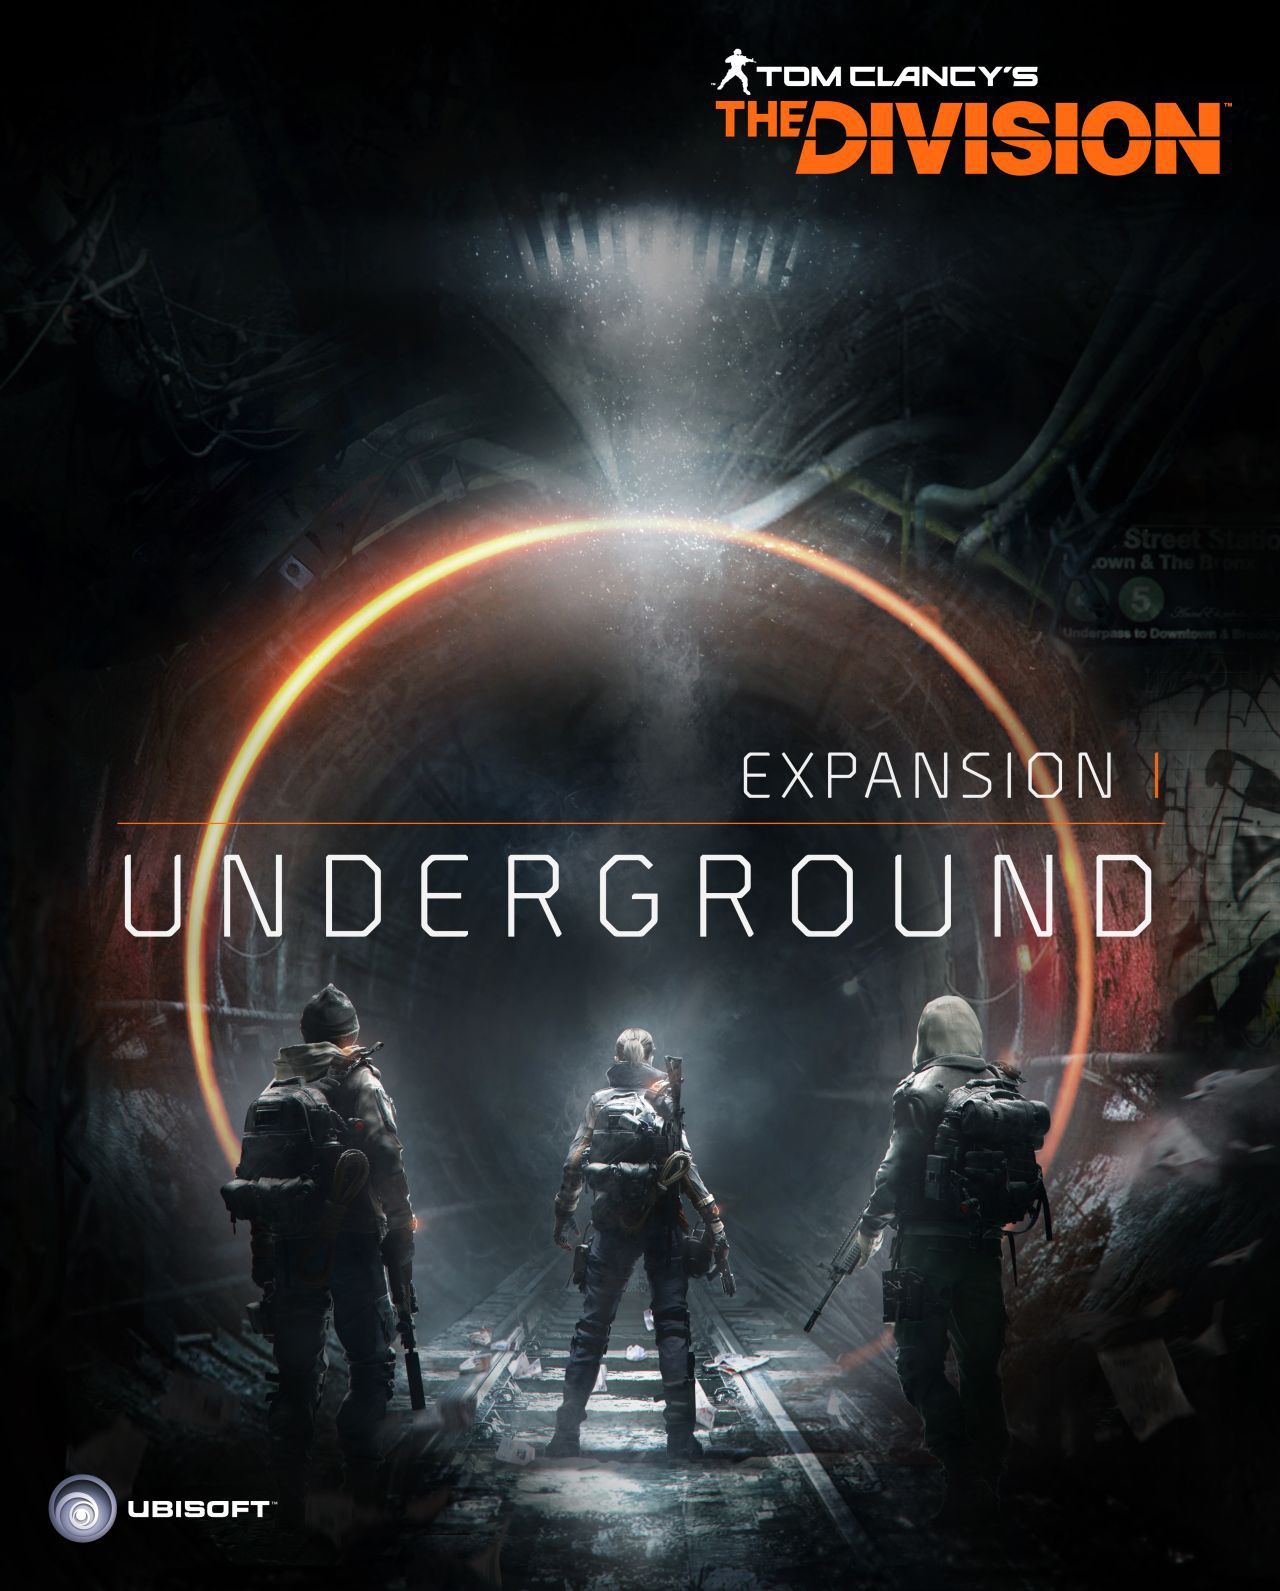 L'espansione I: New York Underground di The Division arriva il 28 Giugno